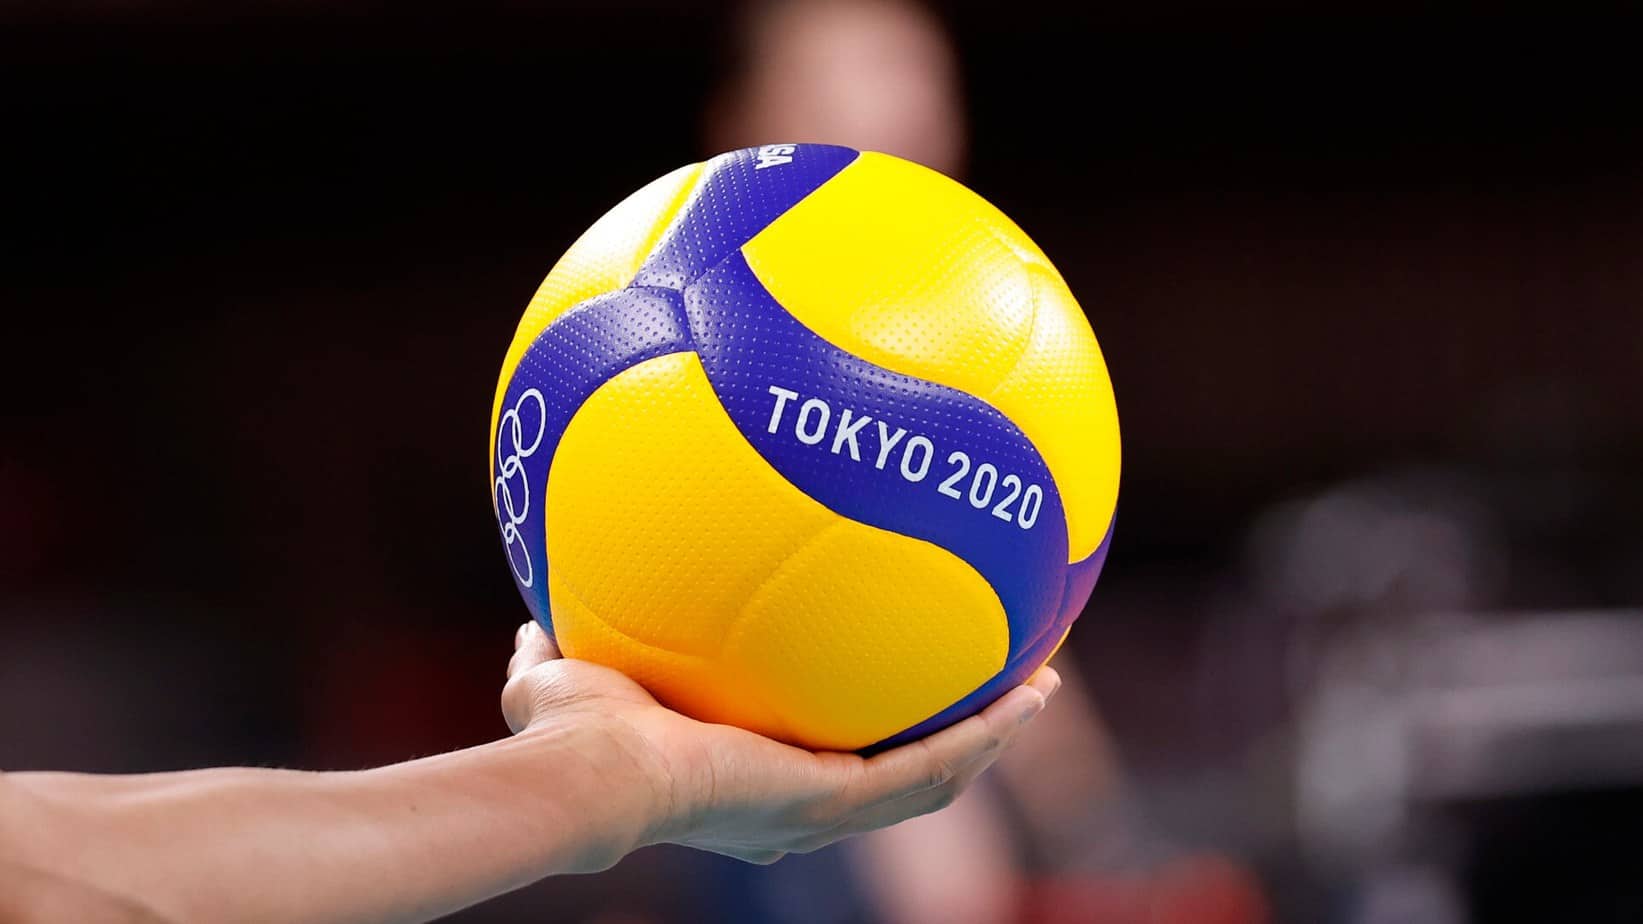 Cuotas de apuestas semifinales olímpicas de voleibol masculino Tokio 2020